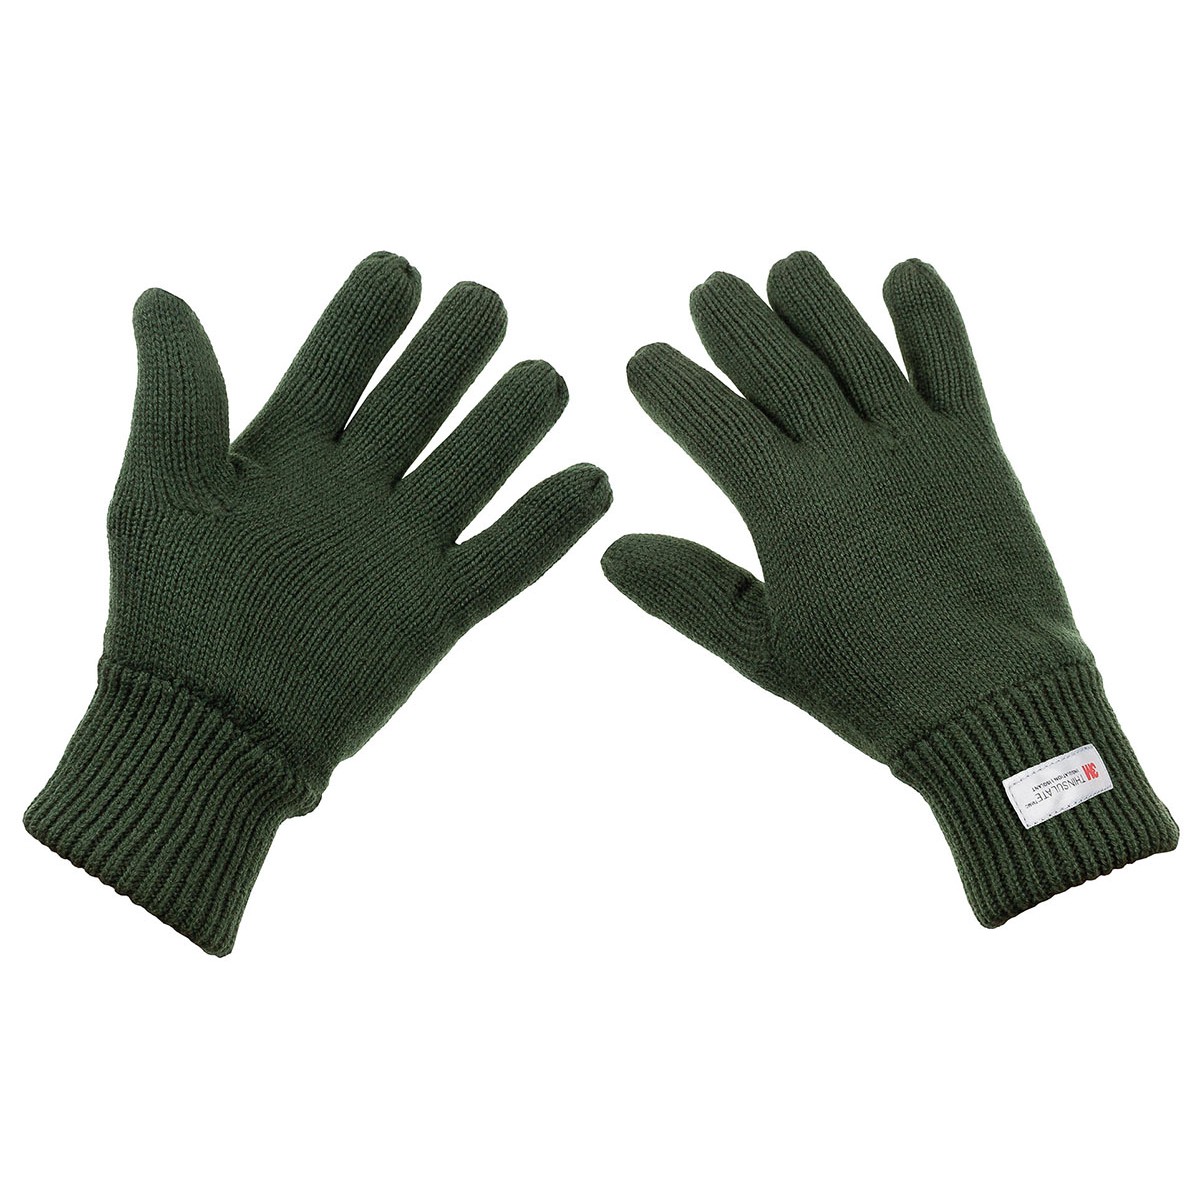 Pletené rukavice zateplené MFH Thinsulate - olivové, XL